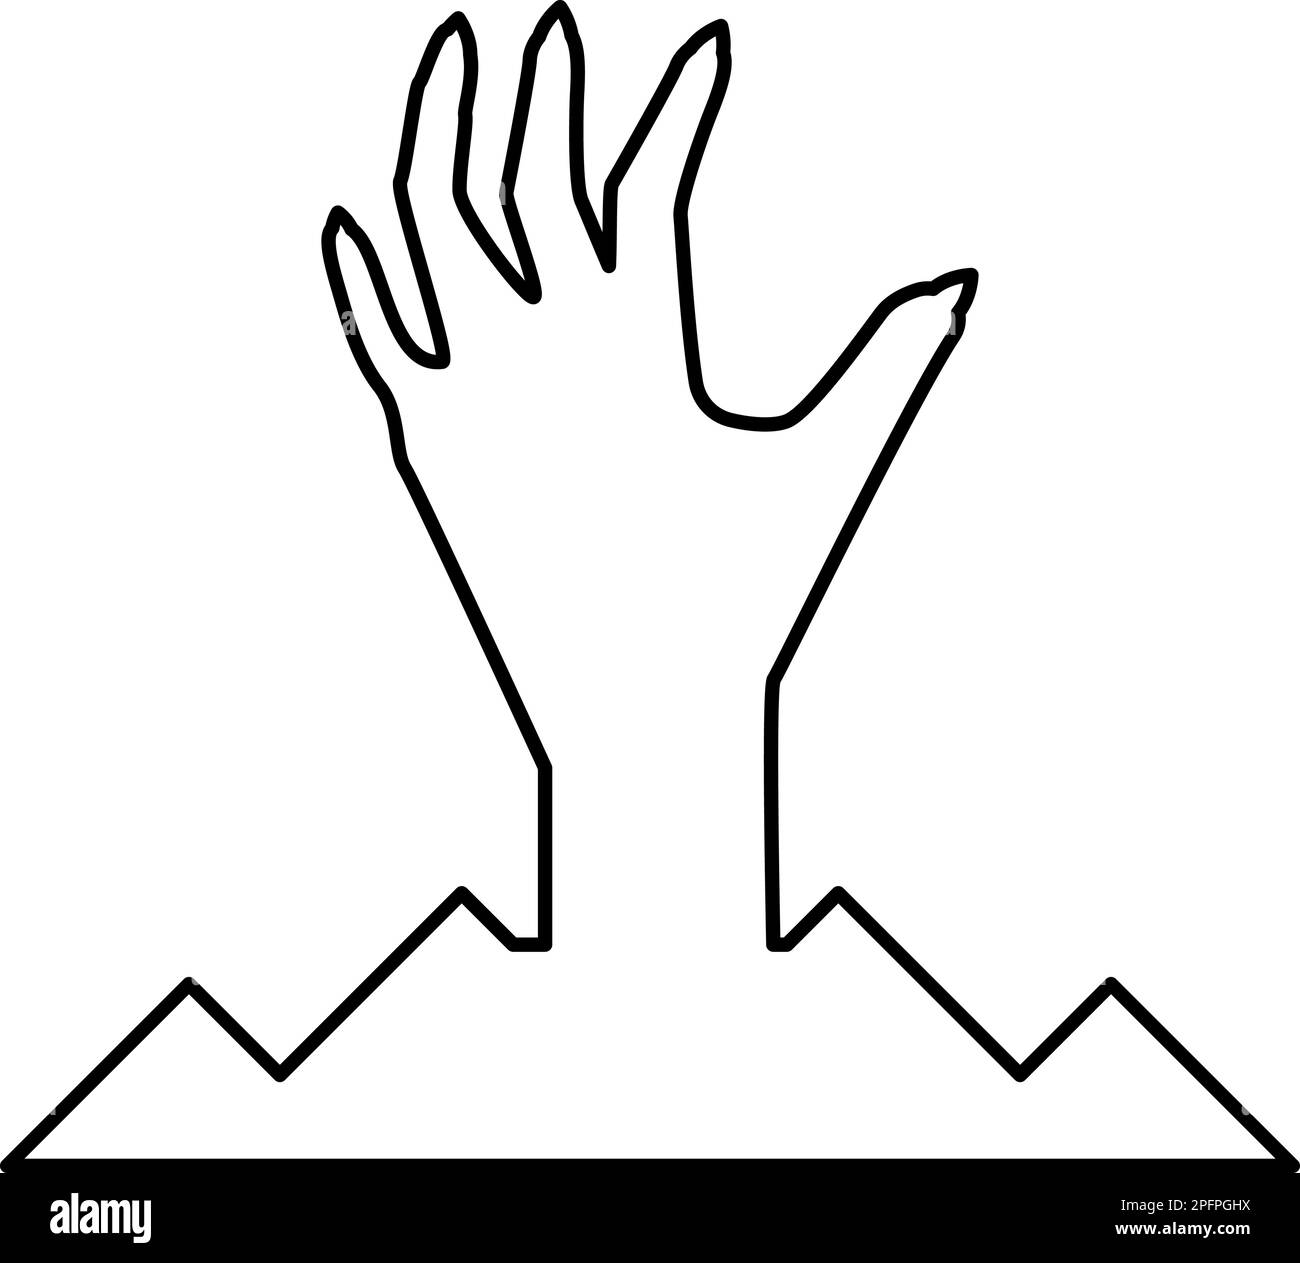 Beängstigende menschliche Hand vom Boden Silhouette Toter Mann Halloween Dekorationselement Zombie Konzept gruselige Krallen Pfote scharfe Nägel knöcherne Arme Finger Mann Stock Vektor